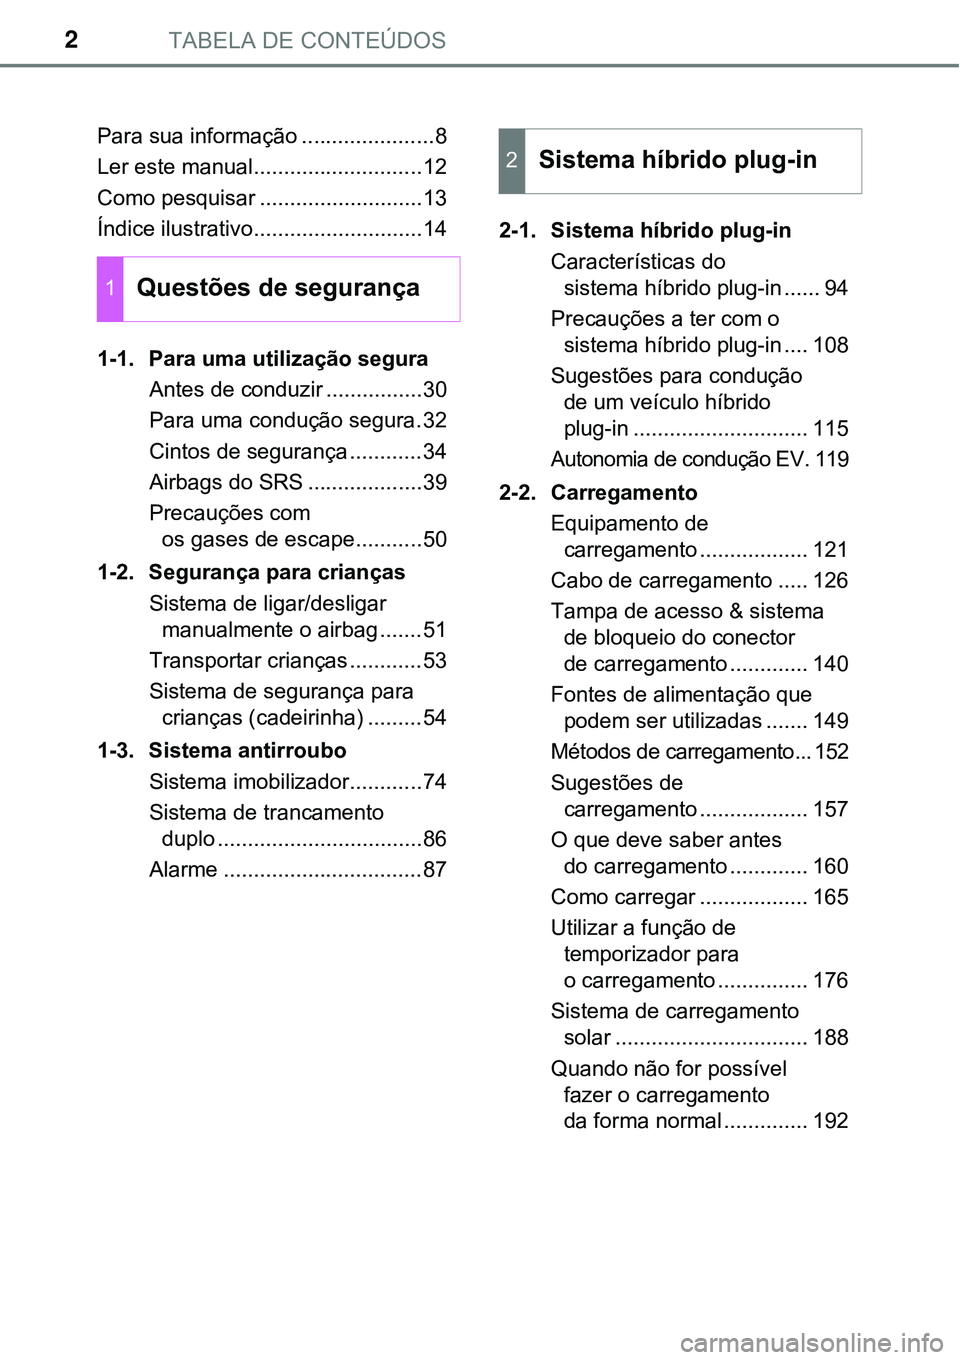 TOYOTA PRIUS PLUG-IN HYBRID 2020  Manual de utilização (in Portuguese) TABELA DE CONTEÚDOS2
Para sua informação ......................8
Ler este manual............................12
Como pesquisar ...........................13
Índice ilustrativo......................